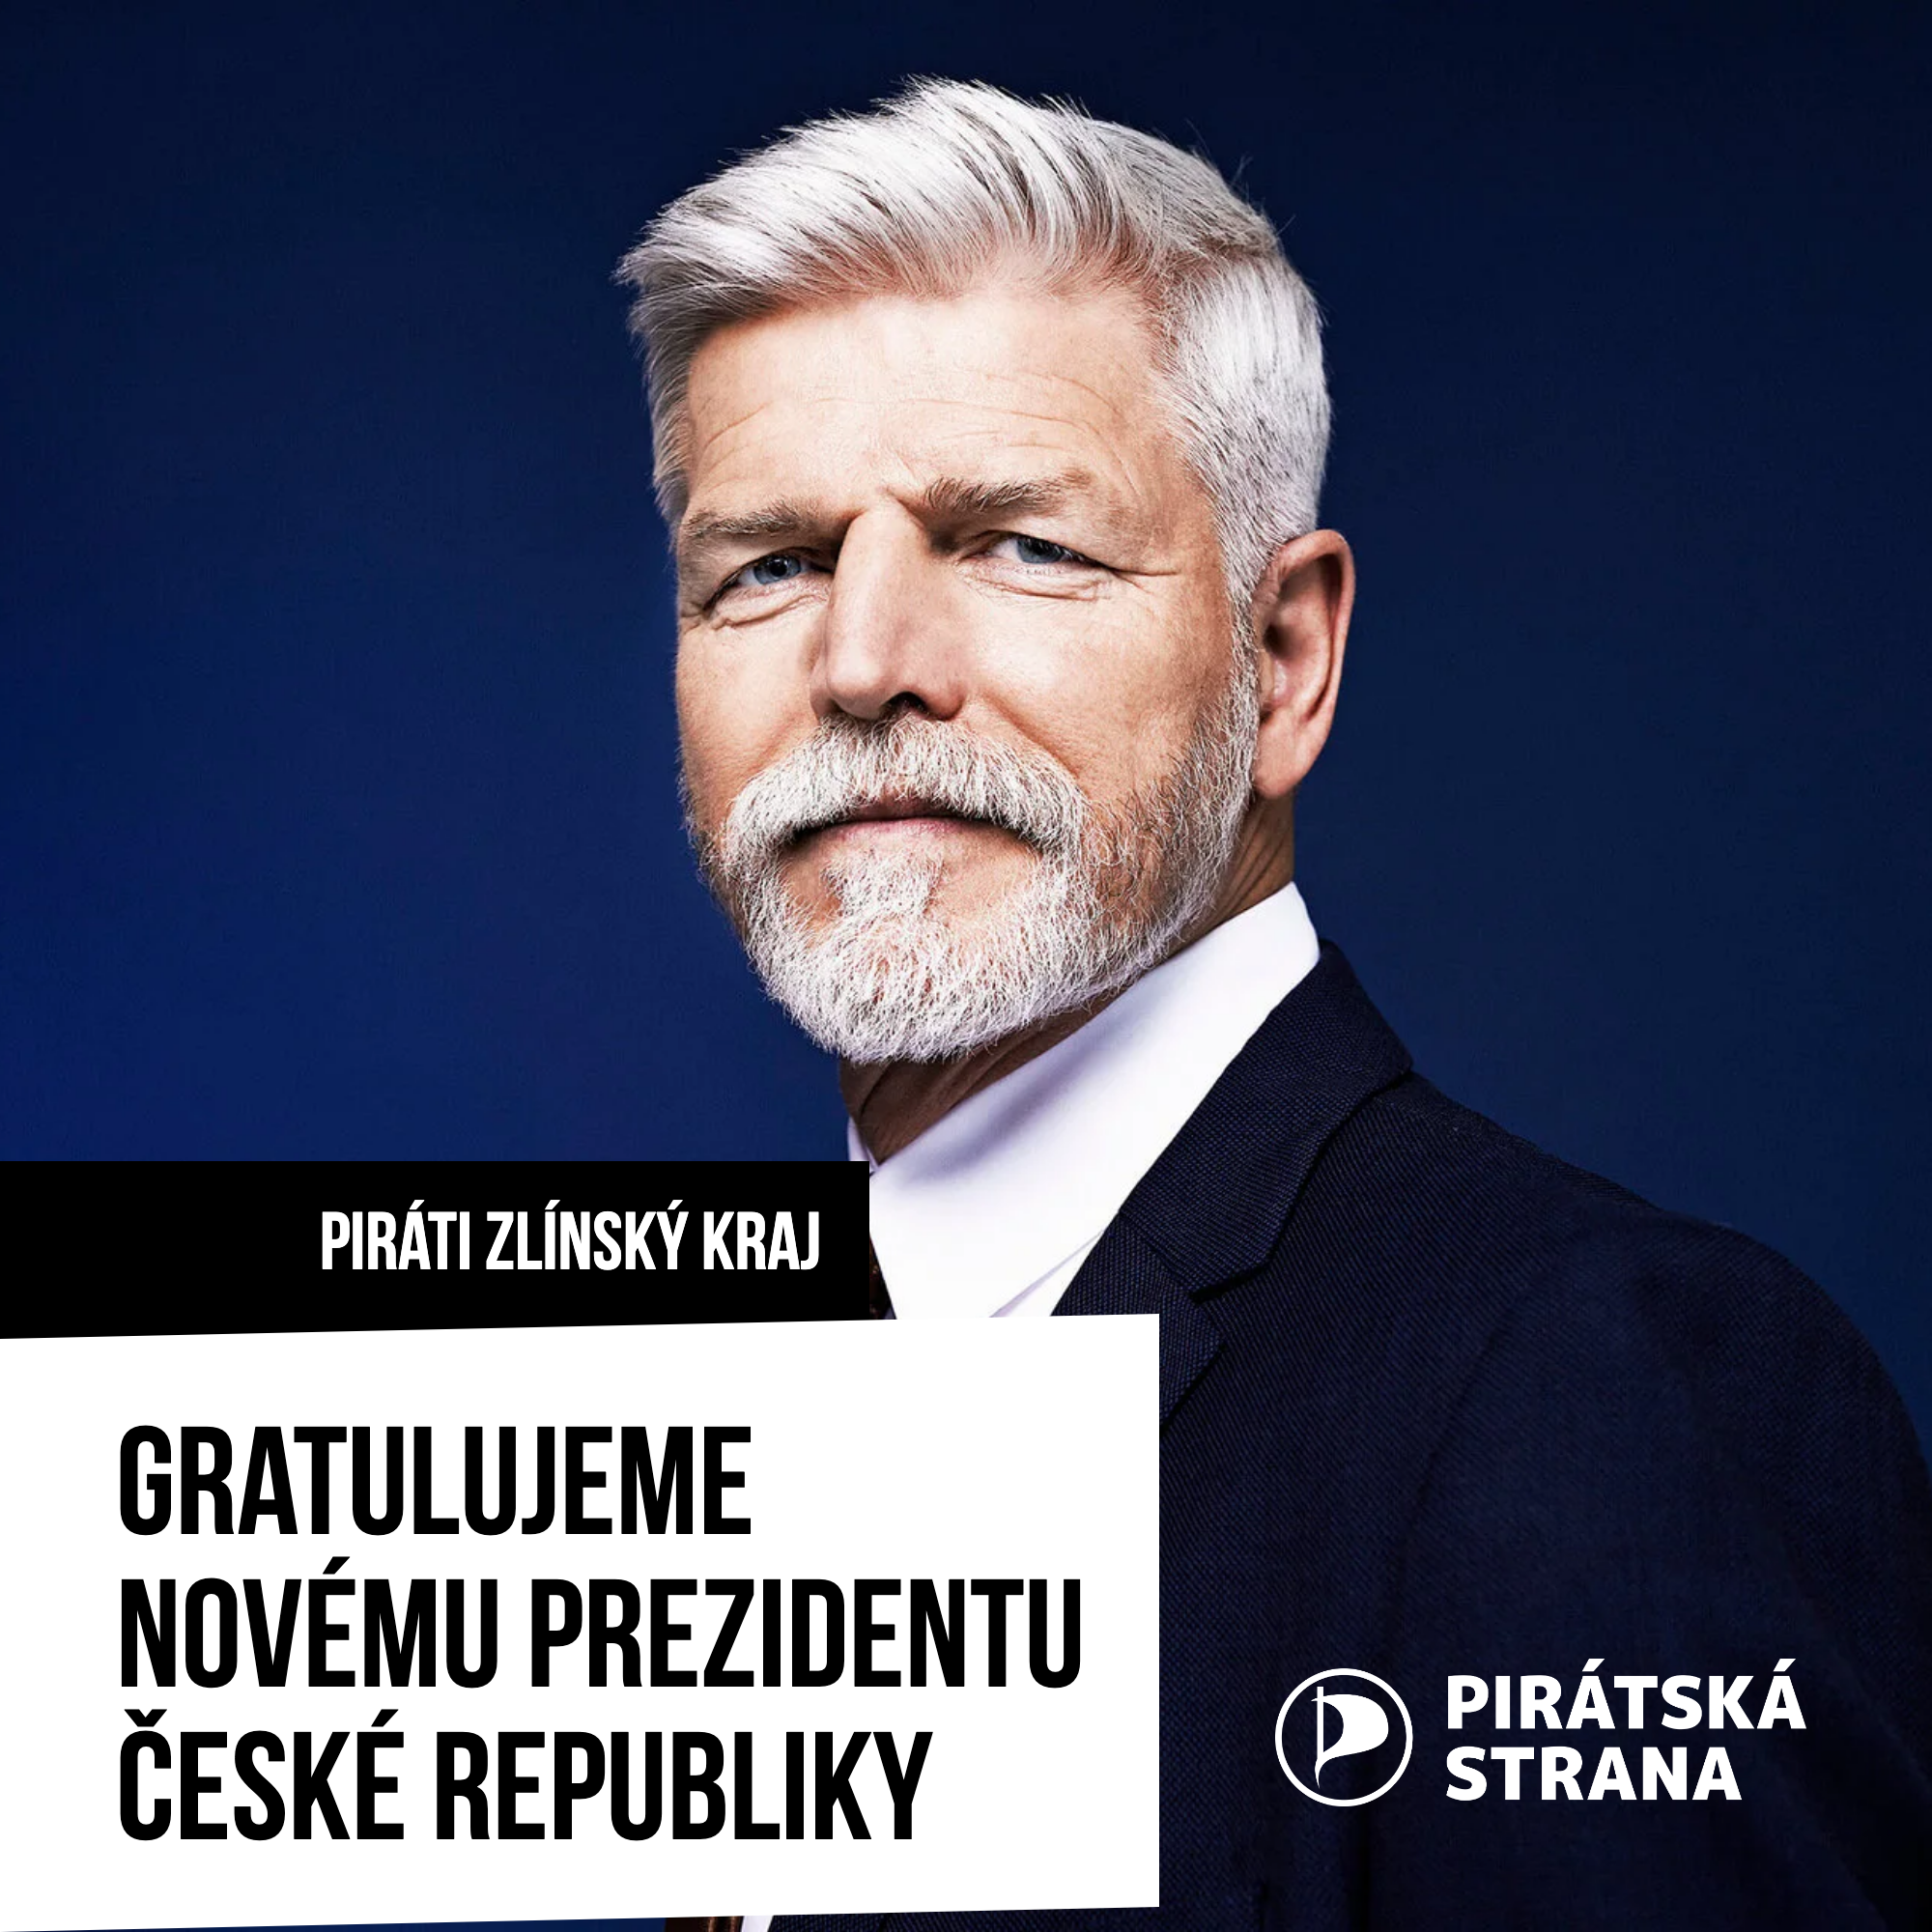 Gratulujeme novému prezidentu České republiky